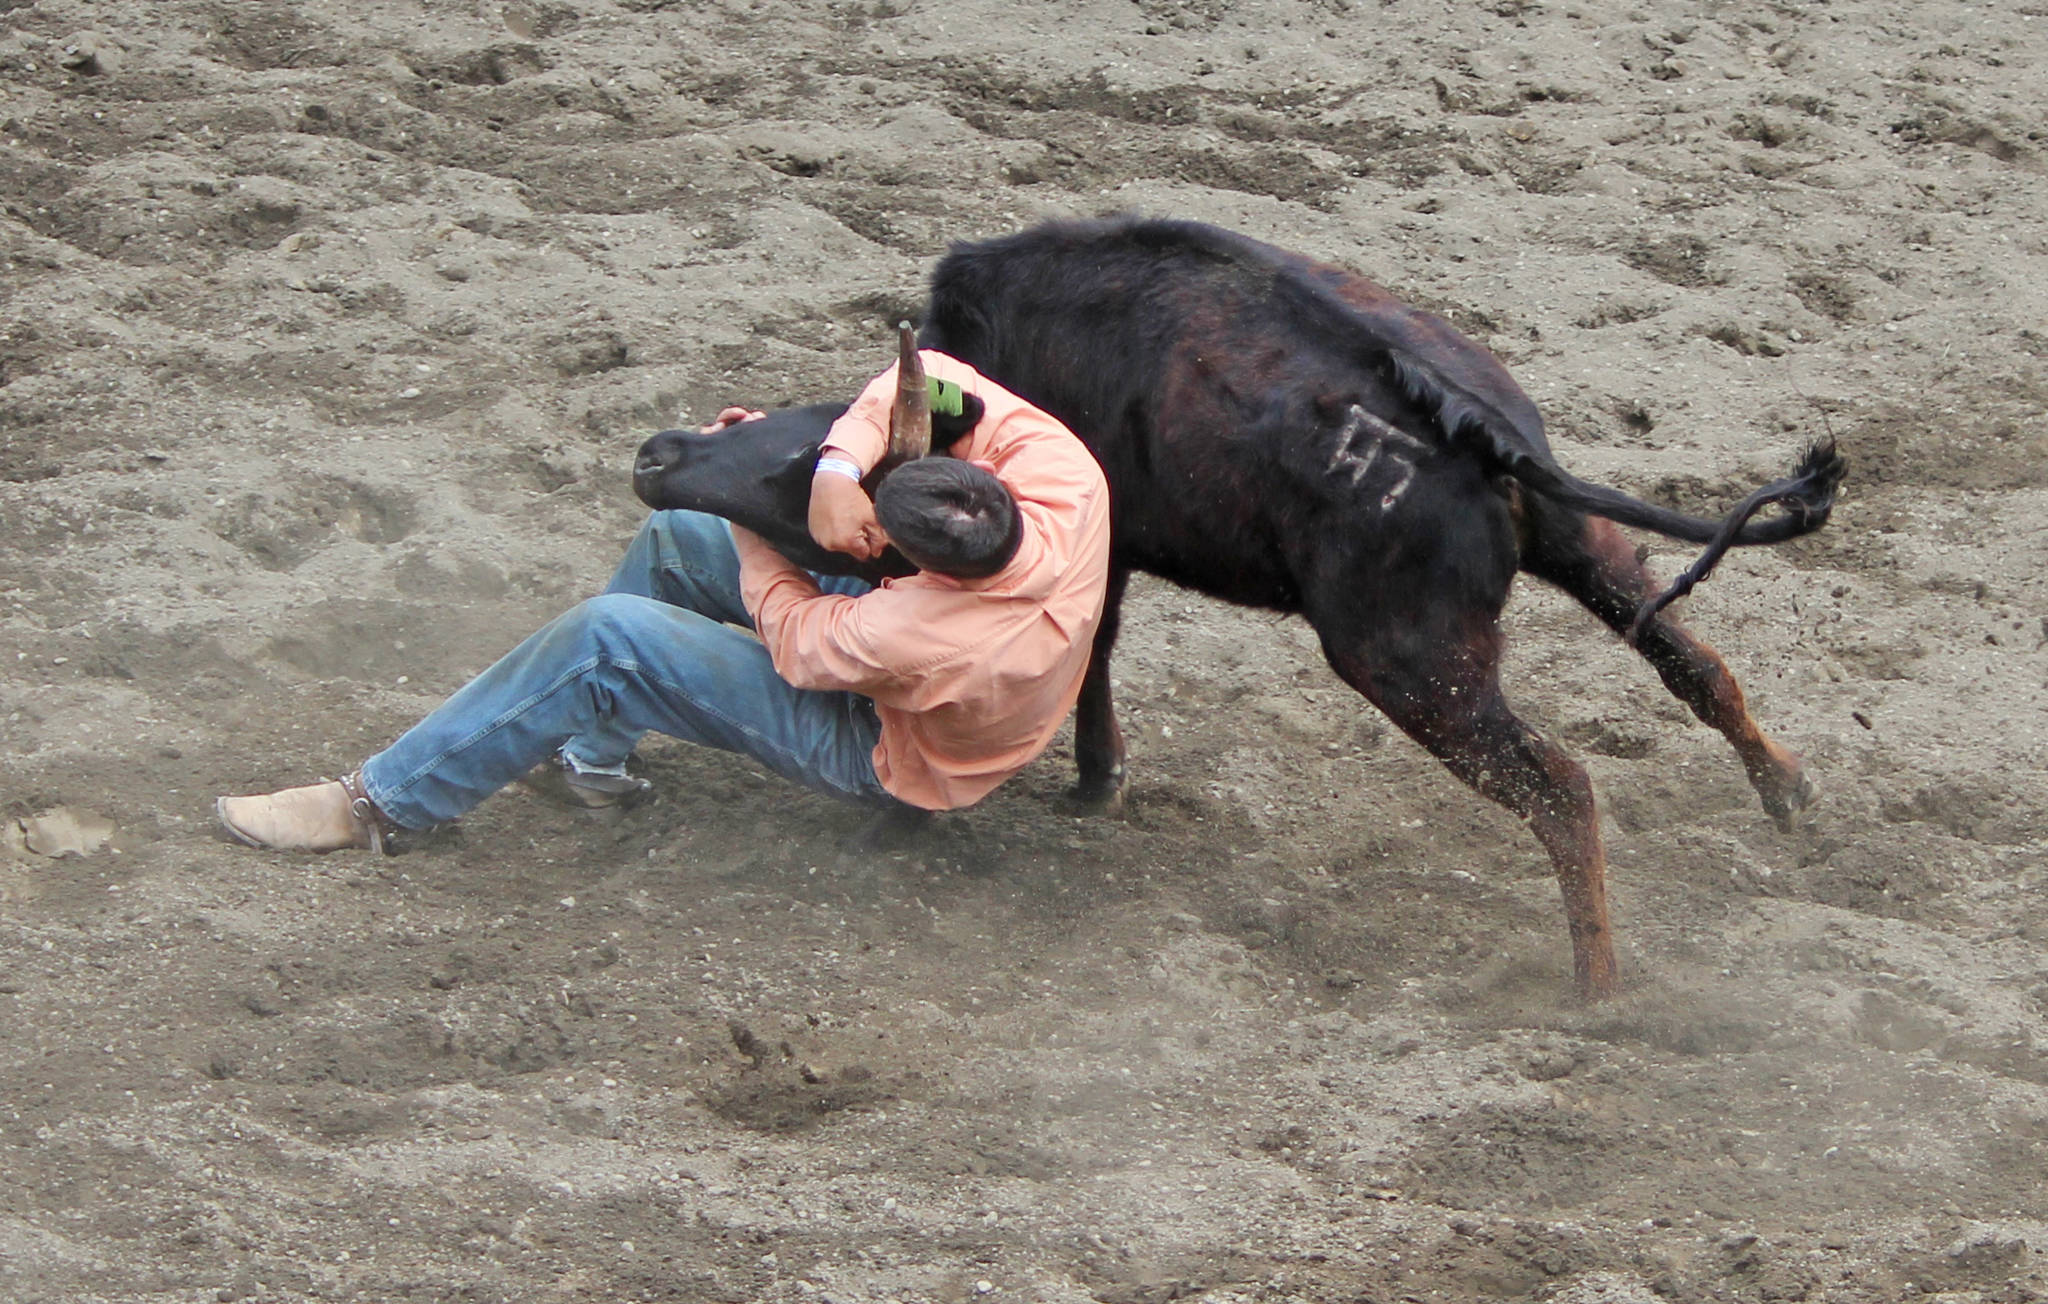 17113511_web1_kispiox-rodeo-steer-wrestling